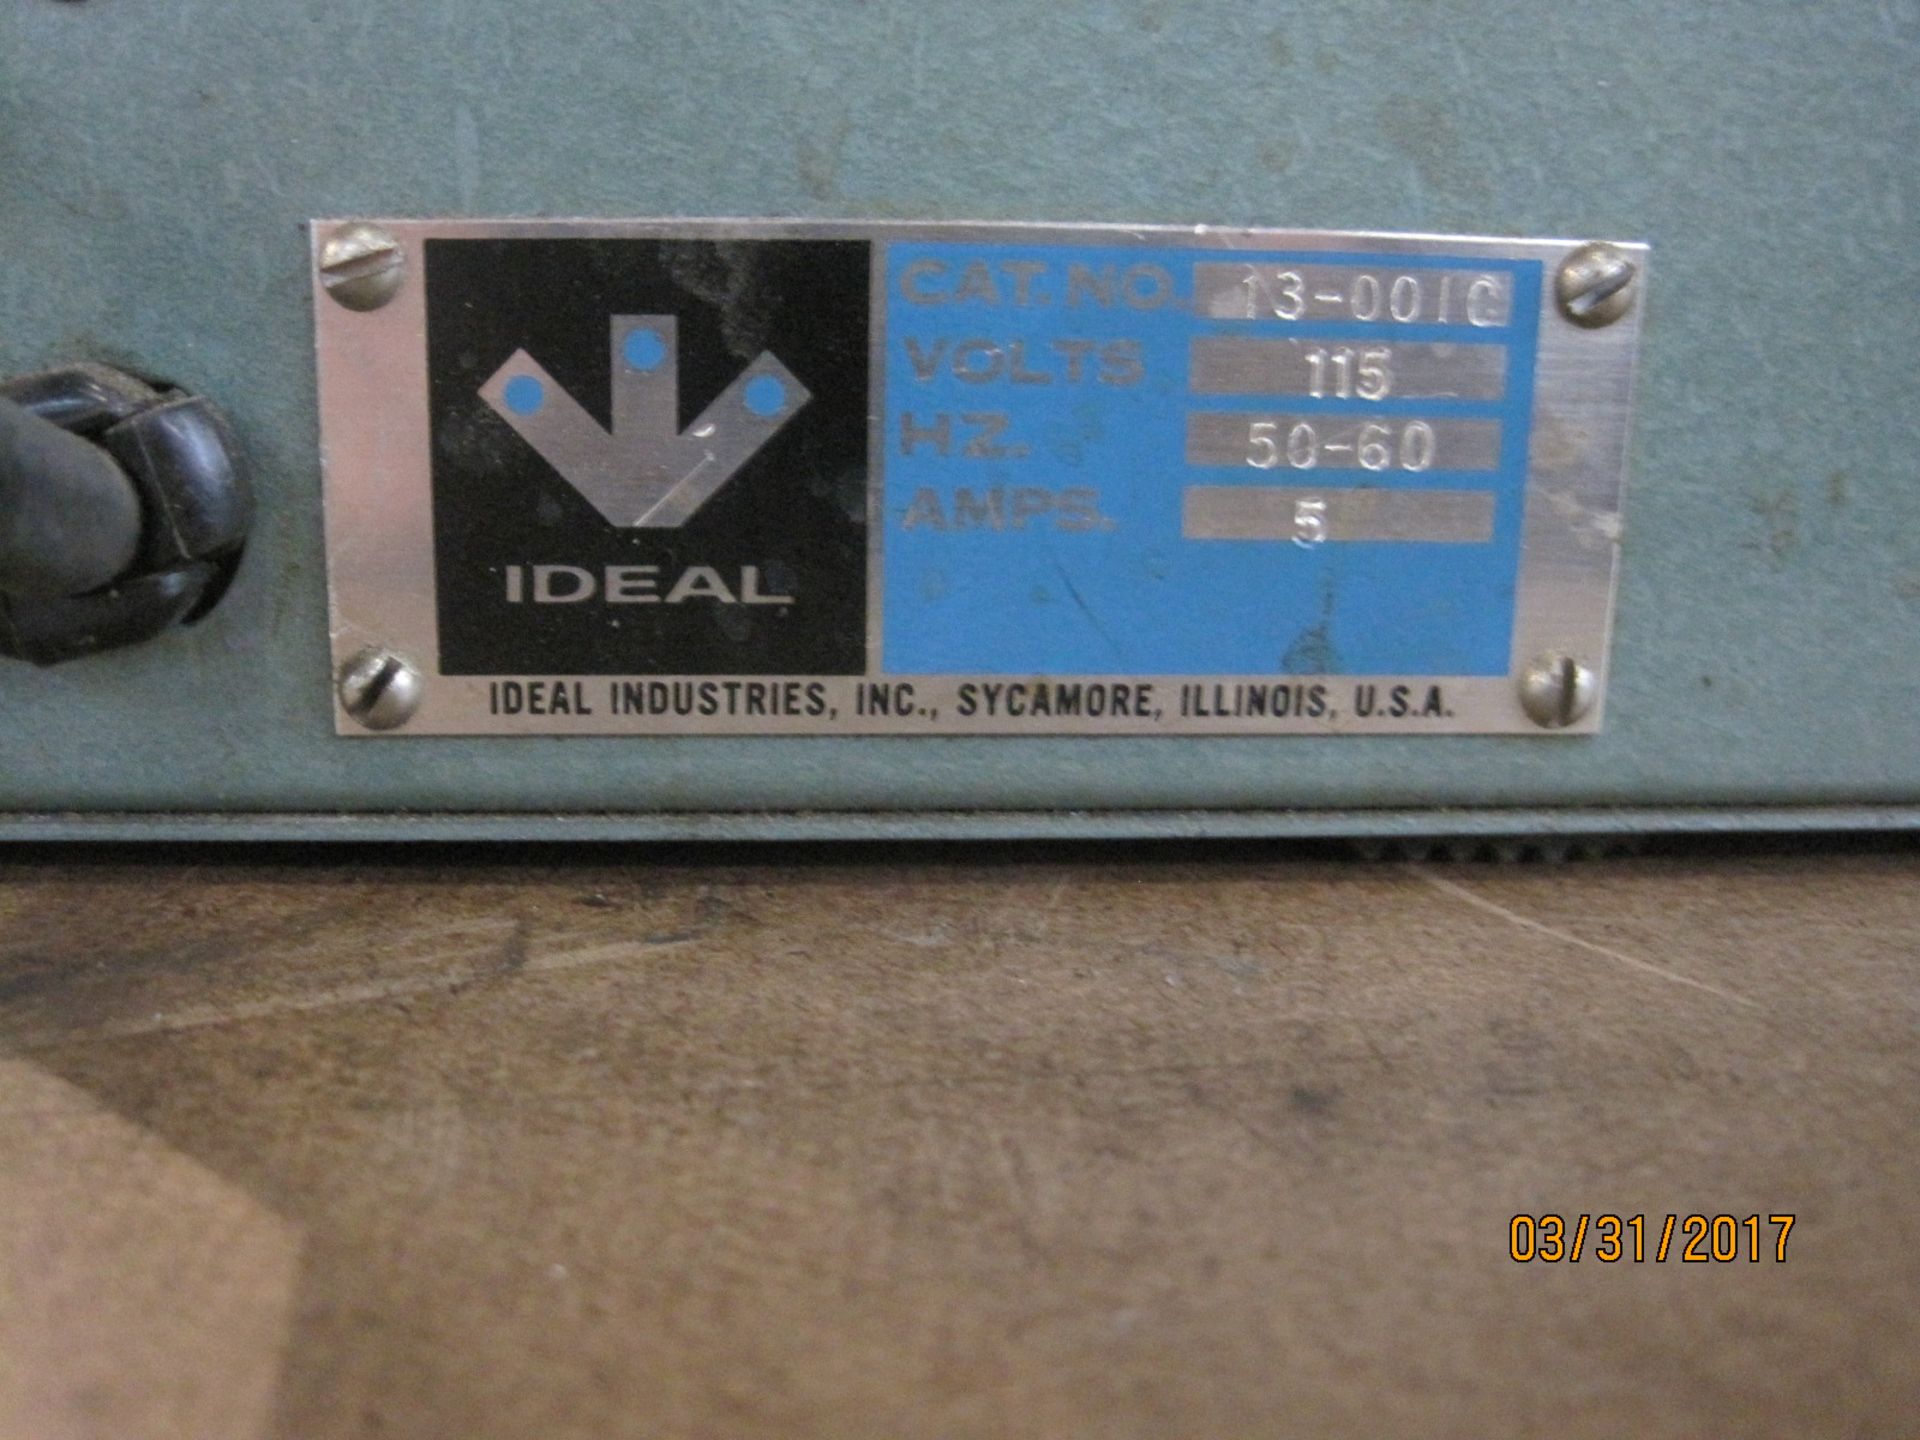 Ideal 23-001C demagnetizer - Image 2 of 2